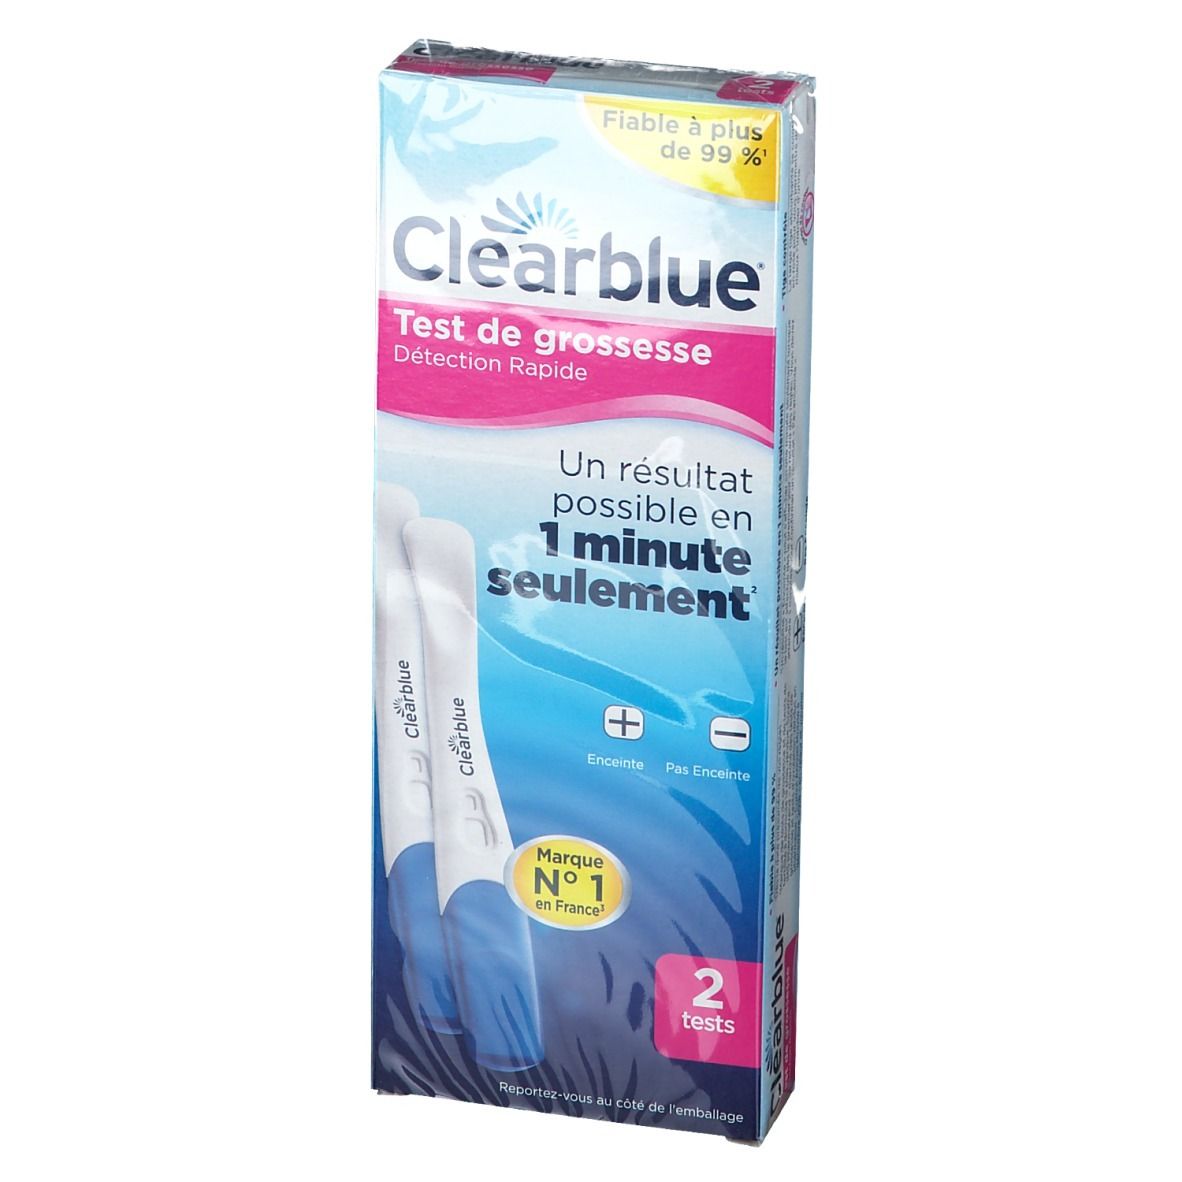 Clearblue® Test de Grossesse Détection Rapide